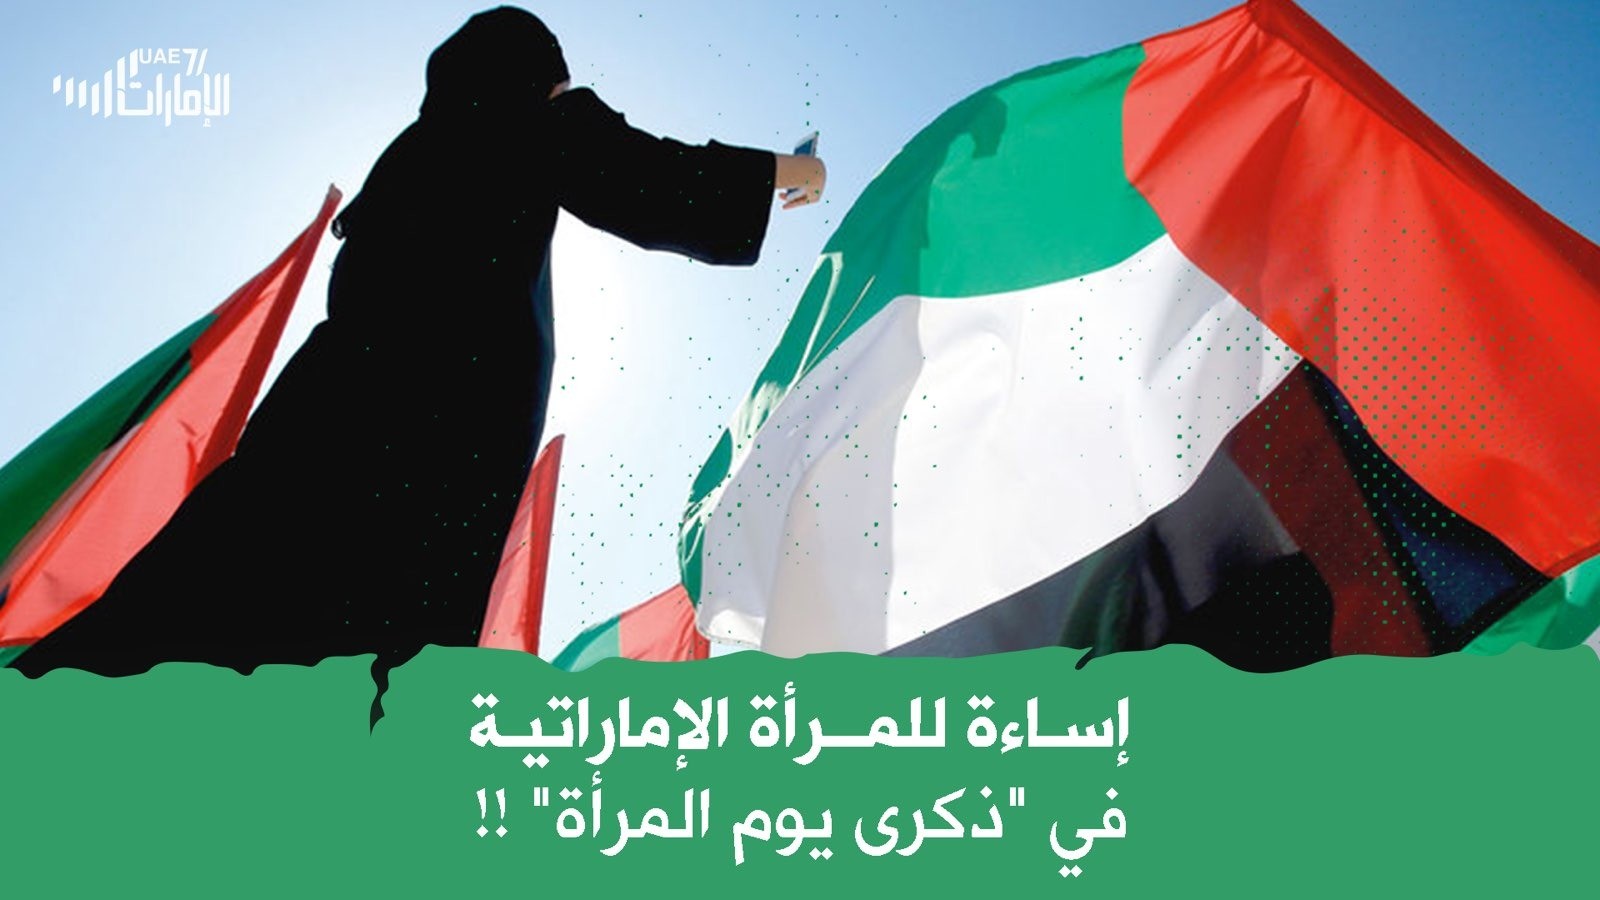 إساءة للمرأة الإماراتية في "ذكرى يوم المرأة"